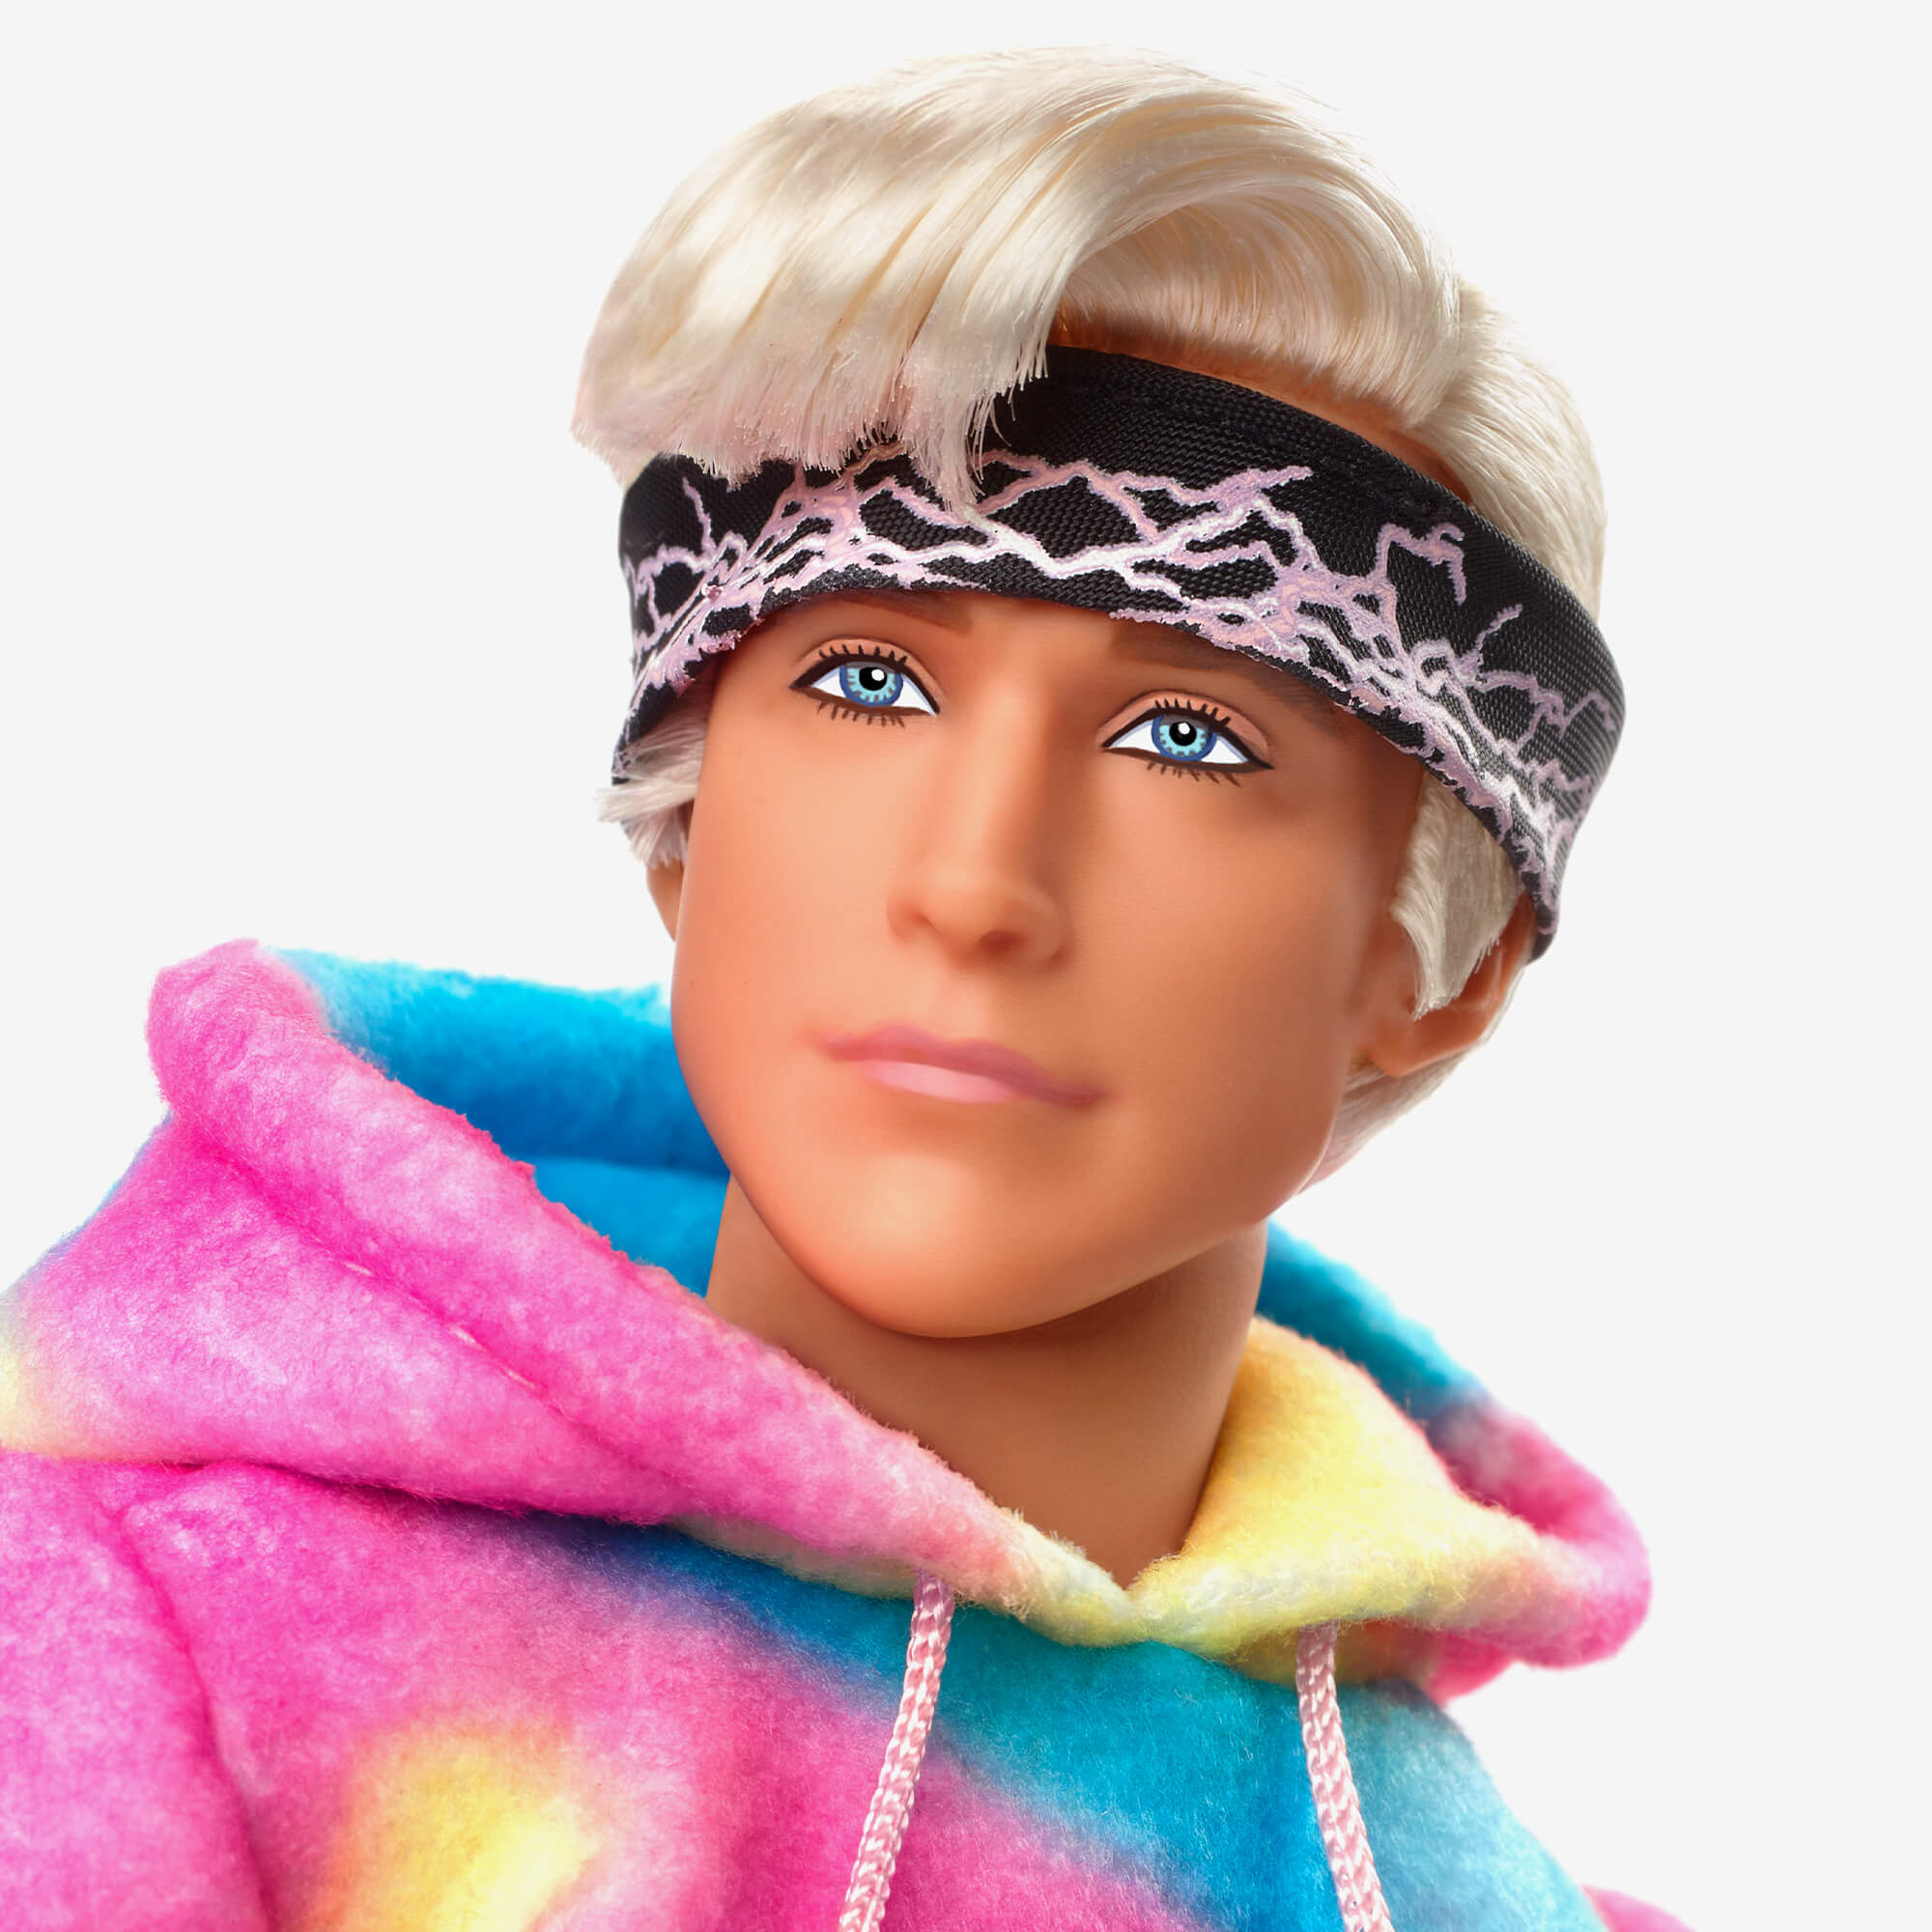 Barbie' Exclusive: What Makes a Ken a Ken?